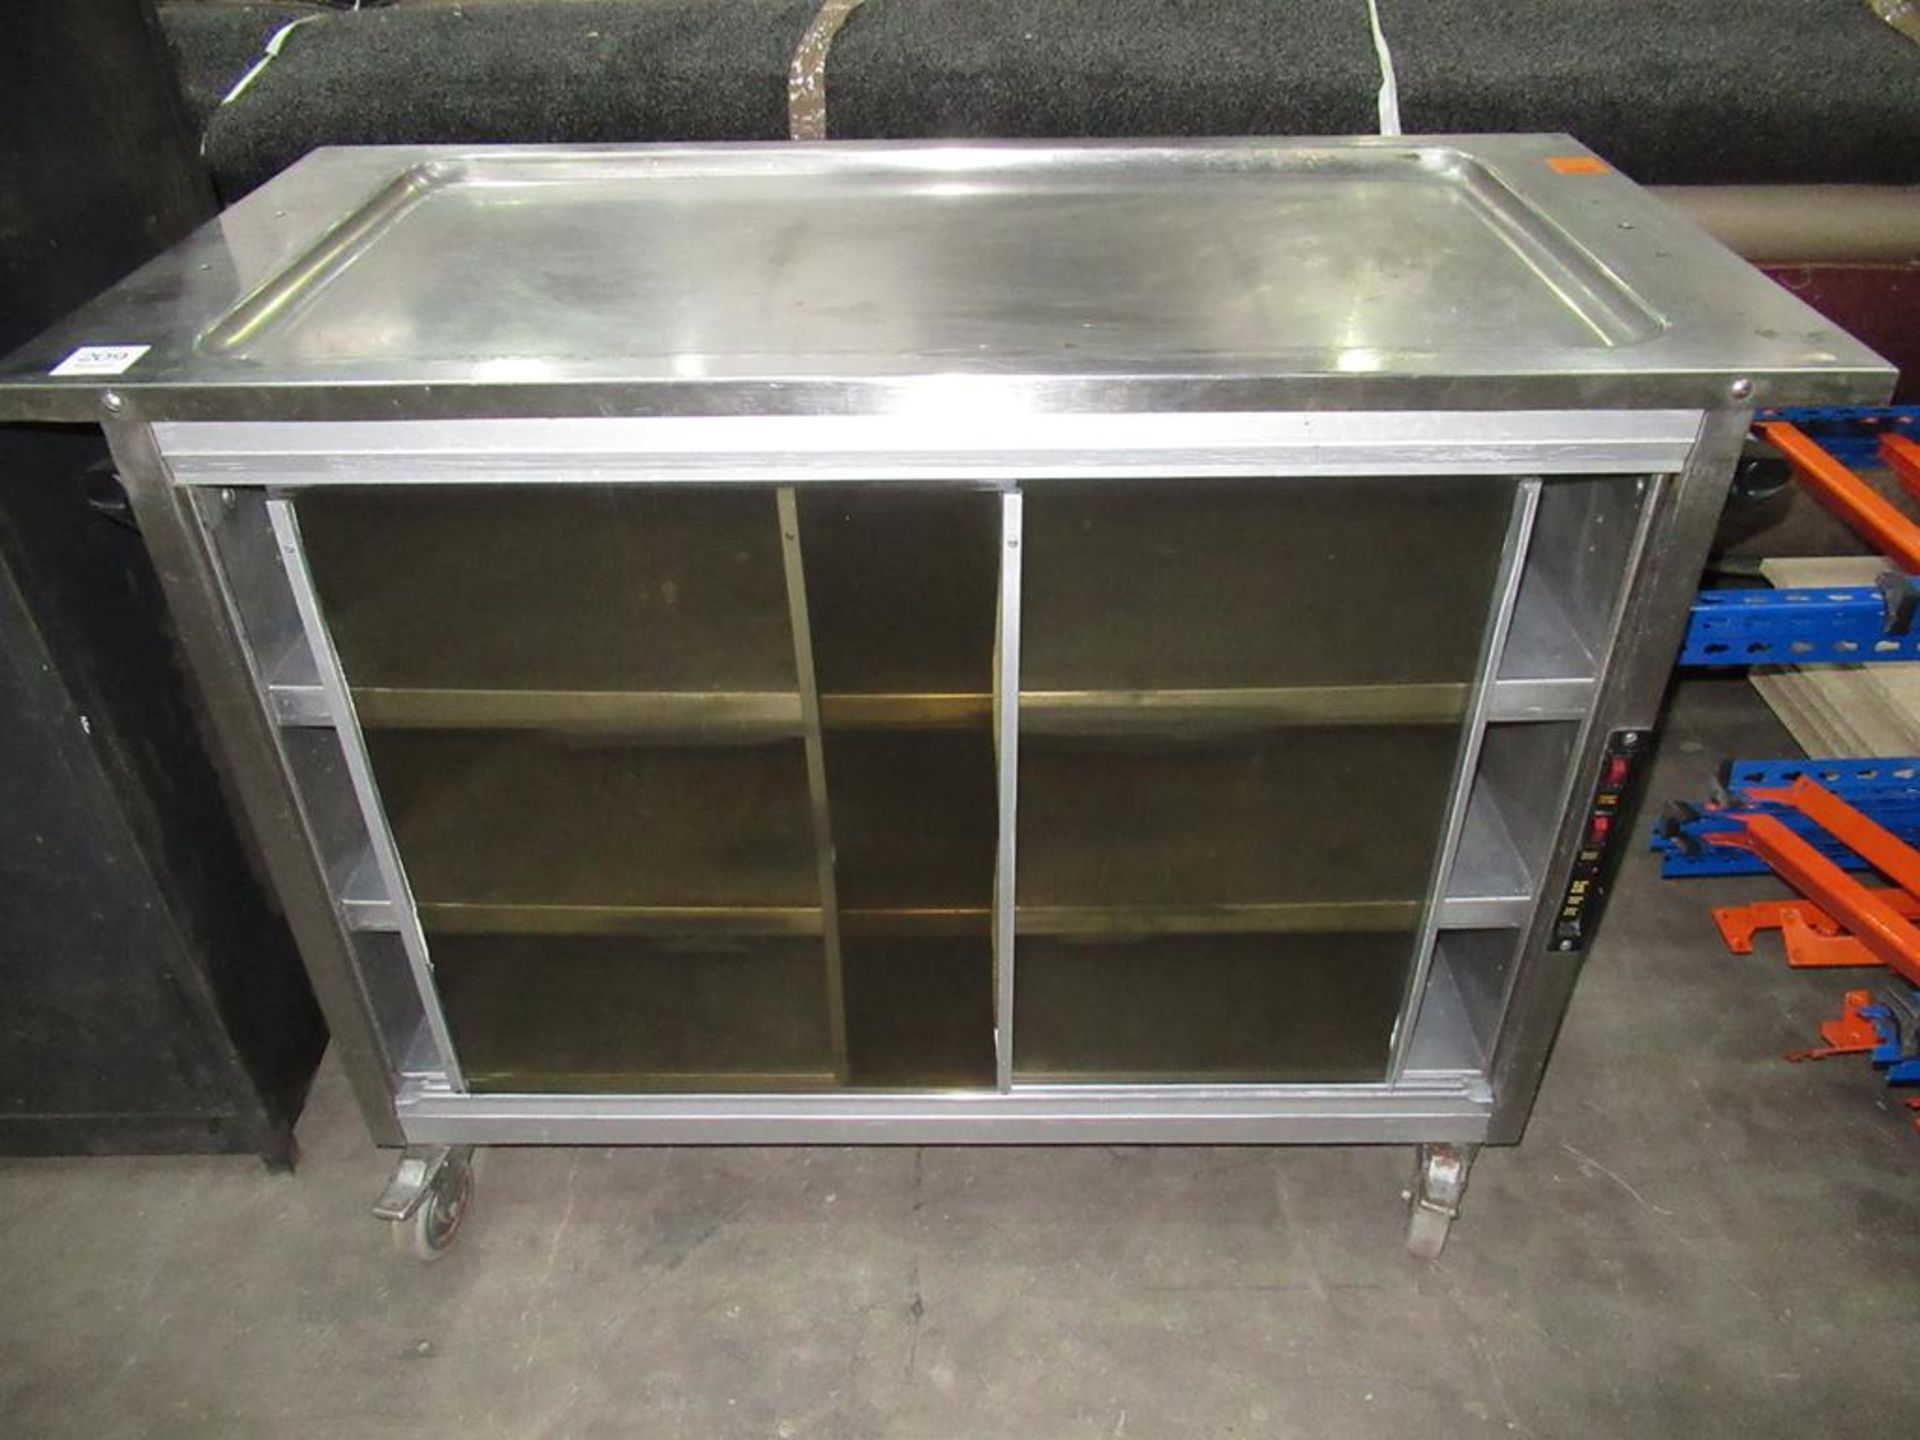 A S/Steel Hot Cupboard